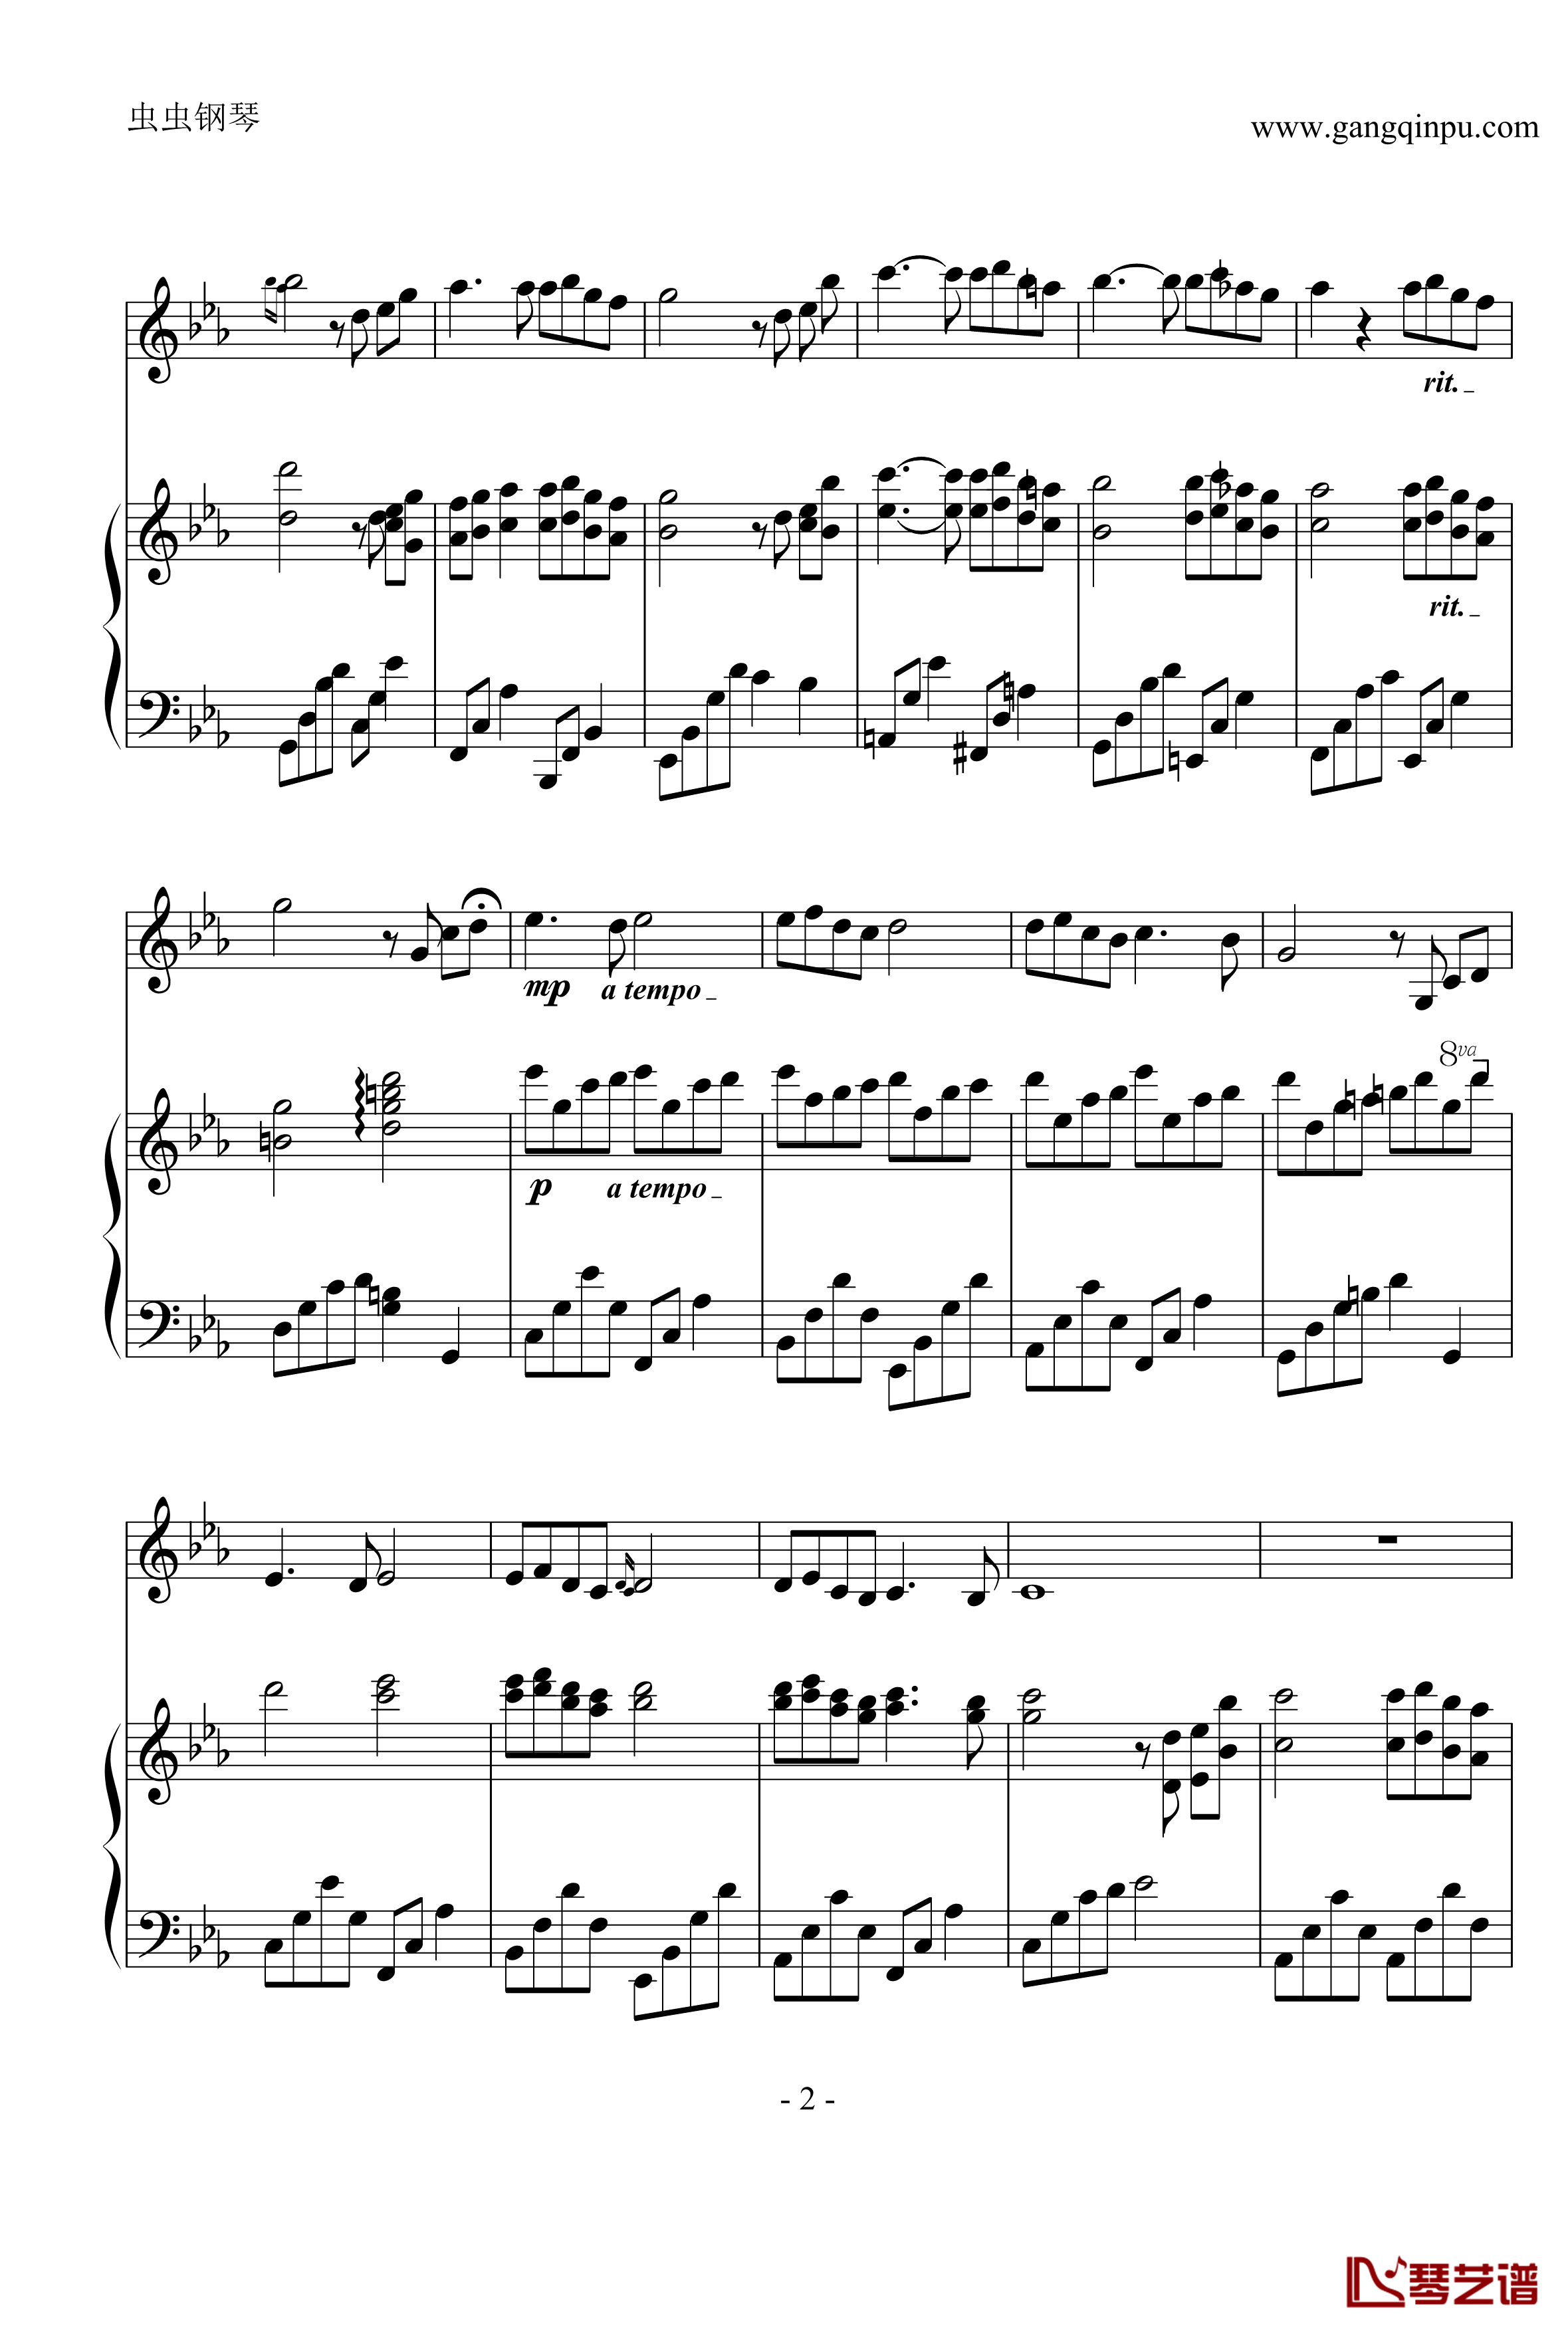 神秘园之歌钢琴谱-钢琴小提琴合奏谱-神秘园2